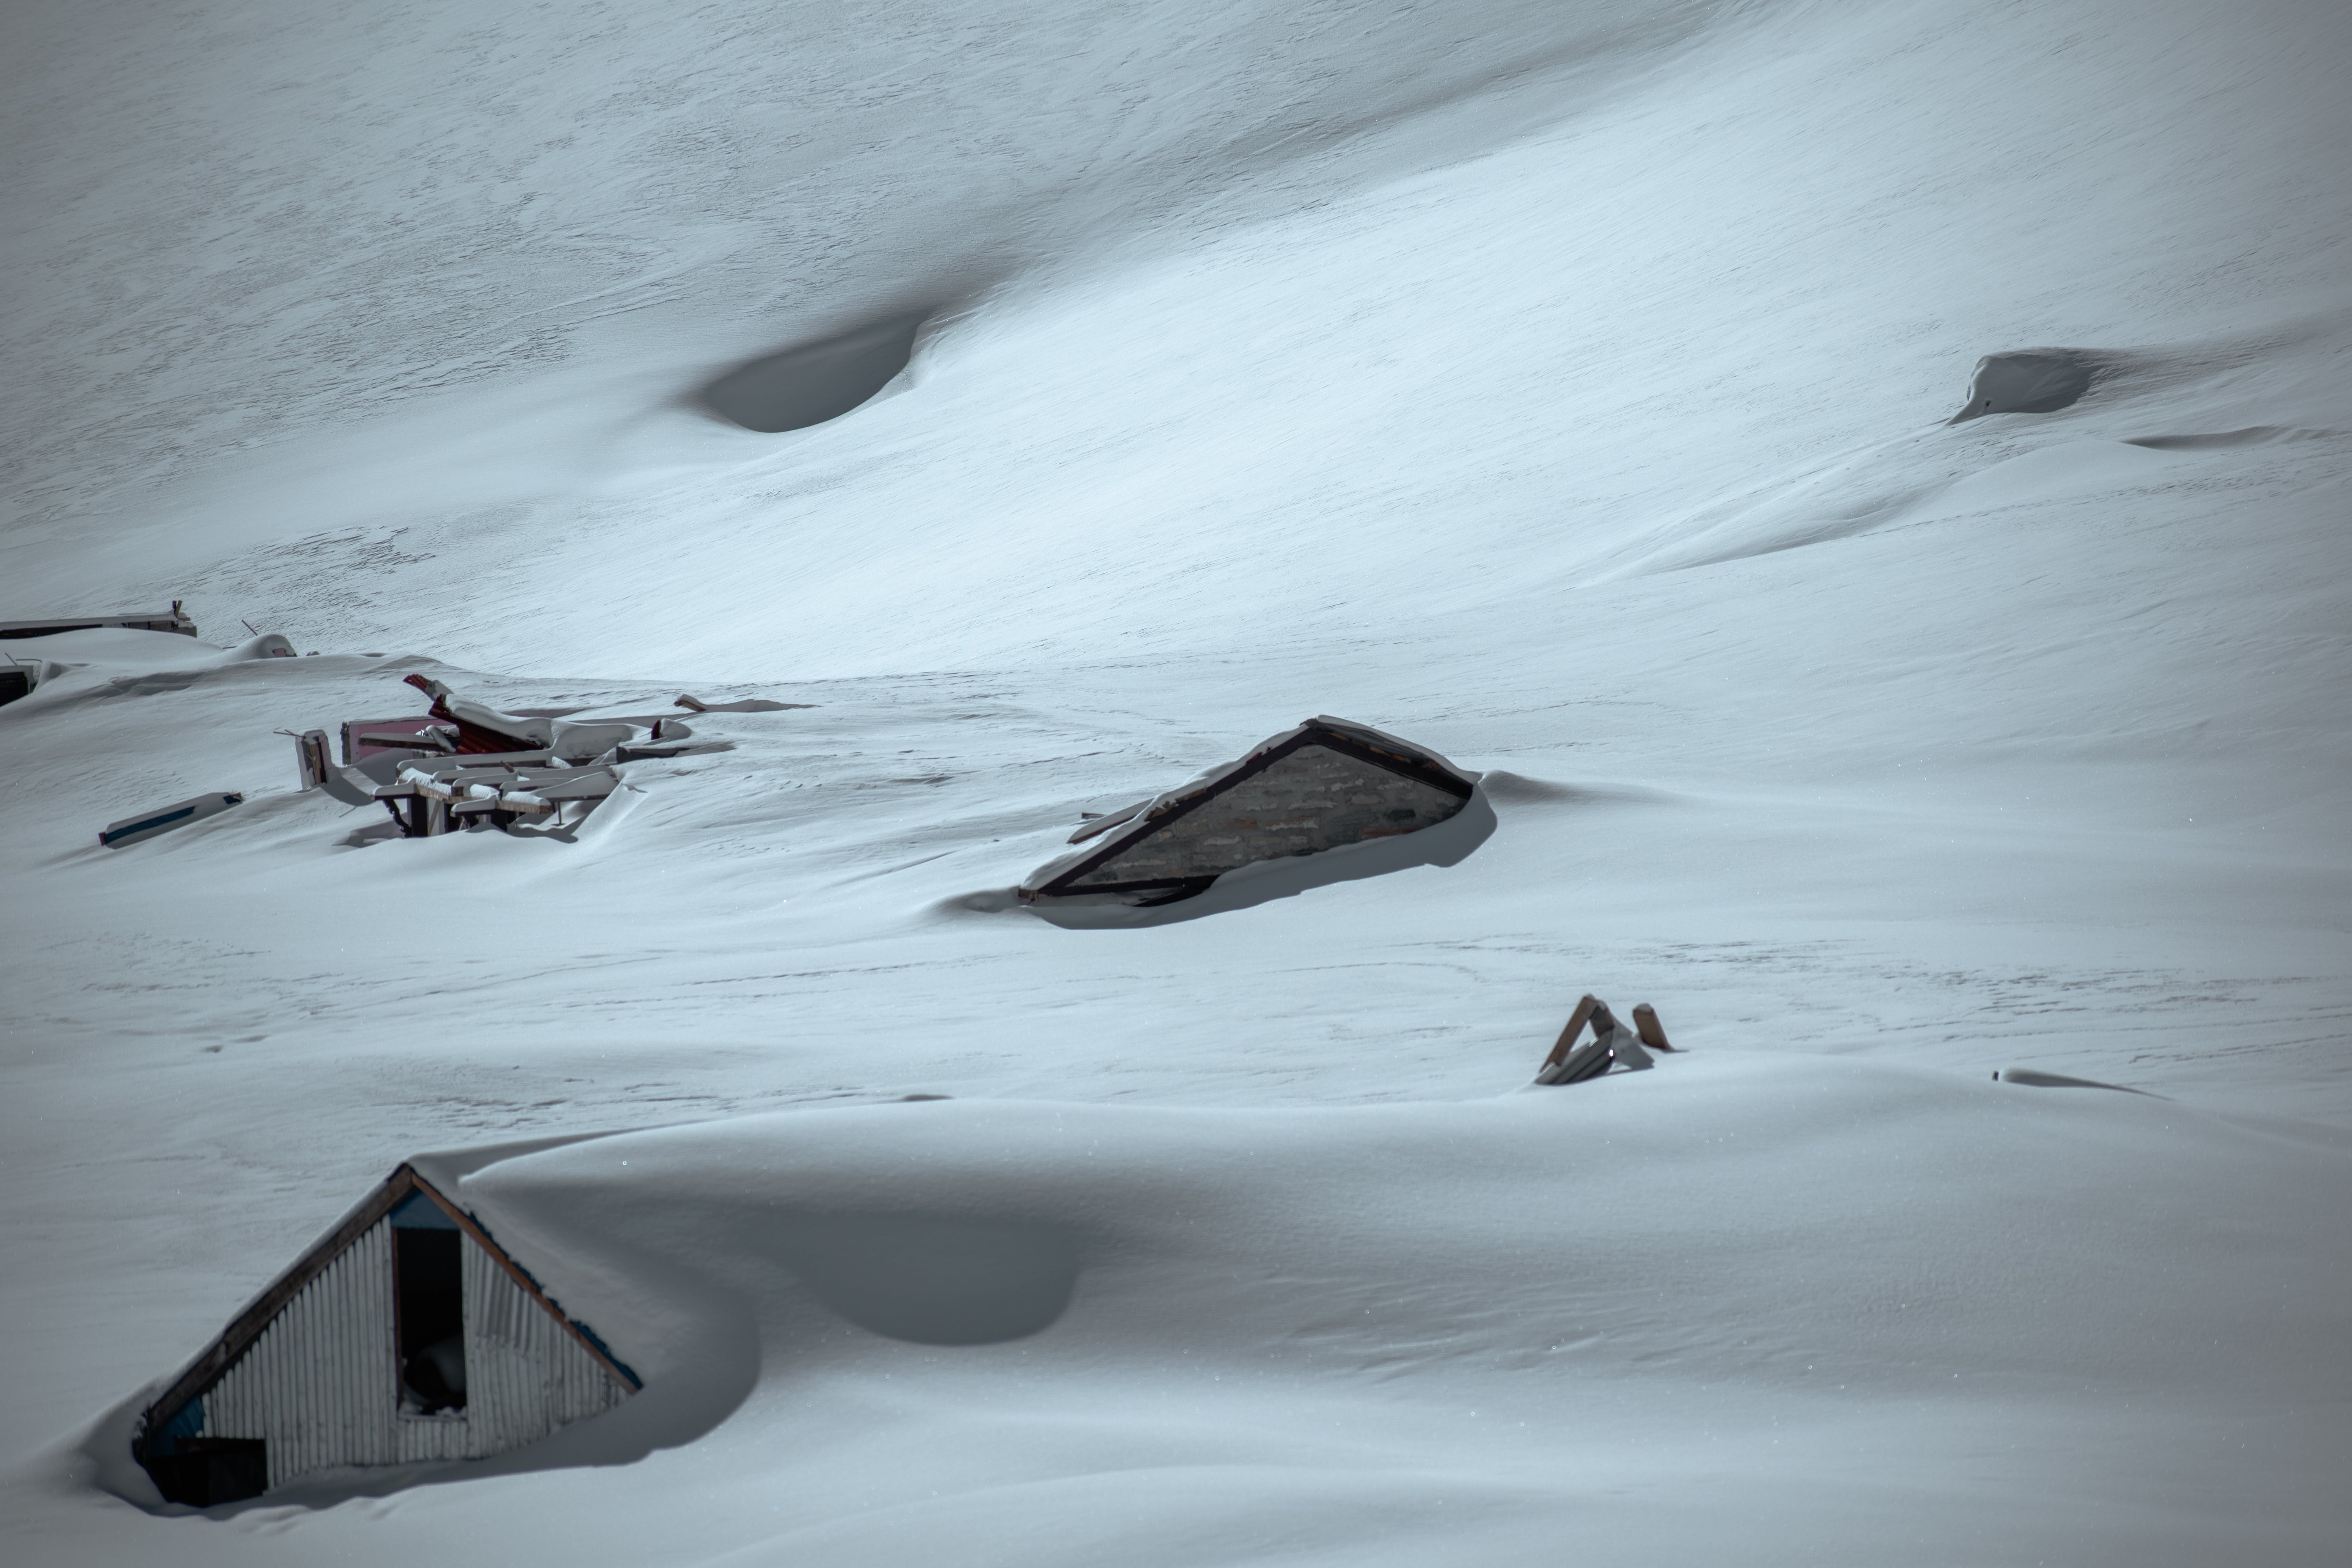 Снеголавинная опасность в Карпатах
Фото иллюстративное